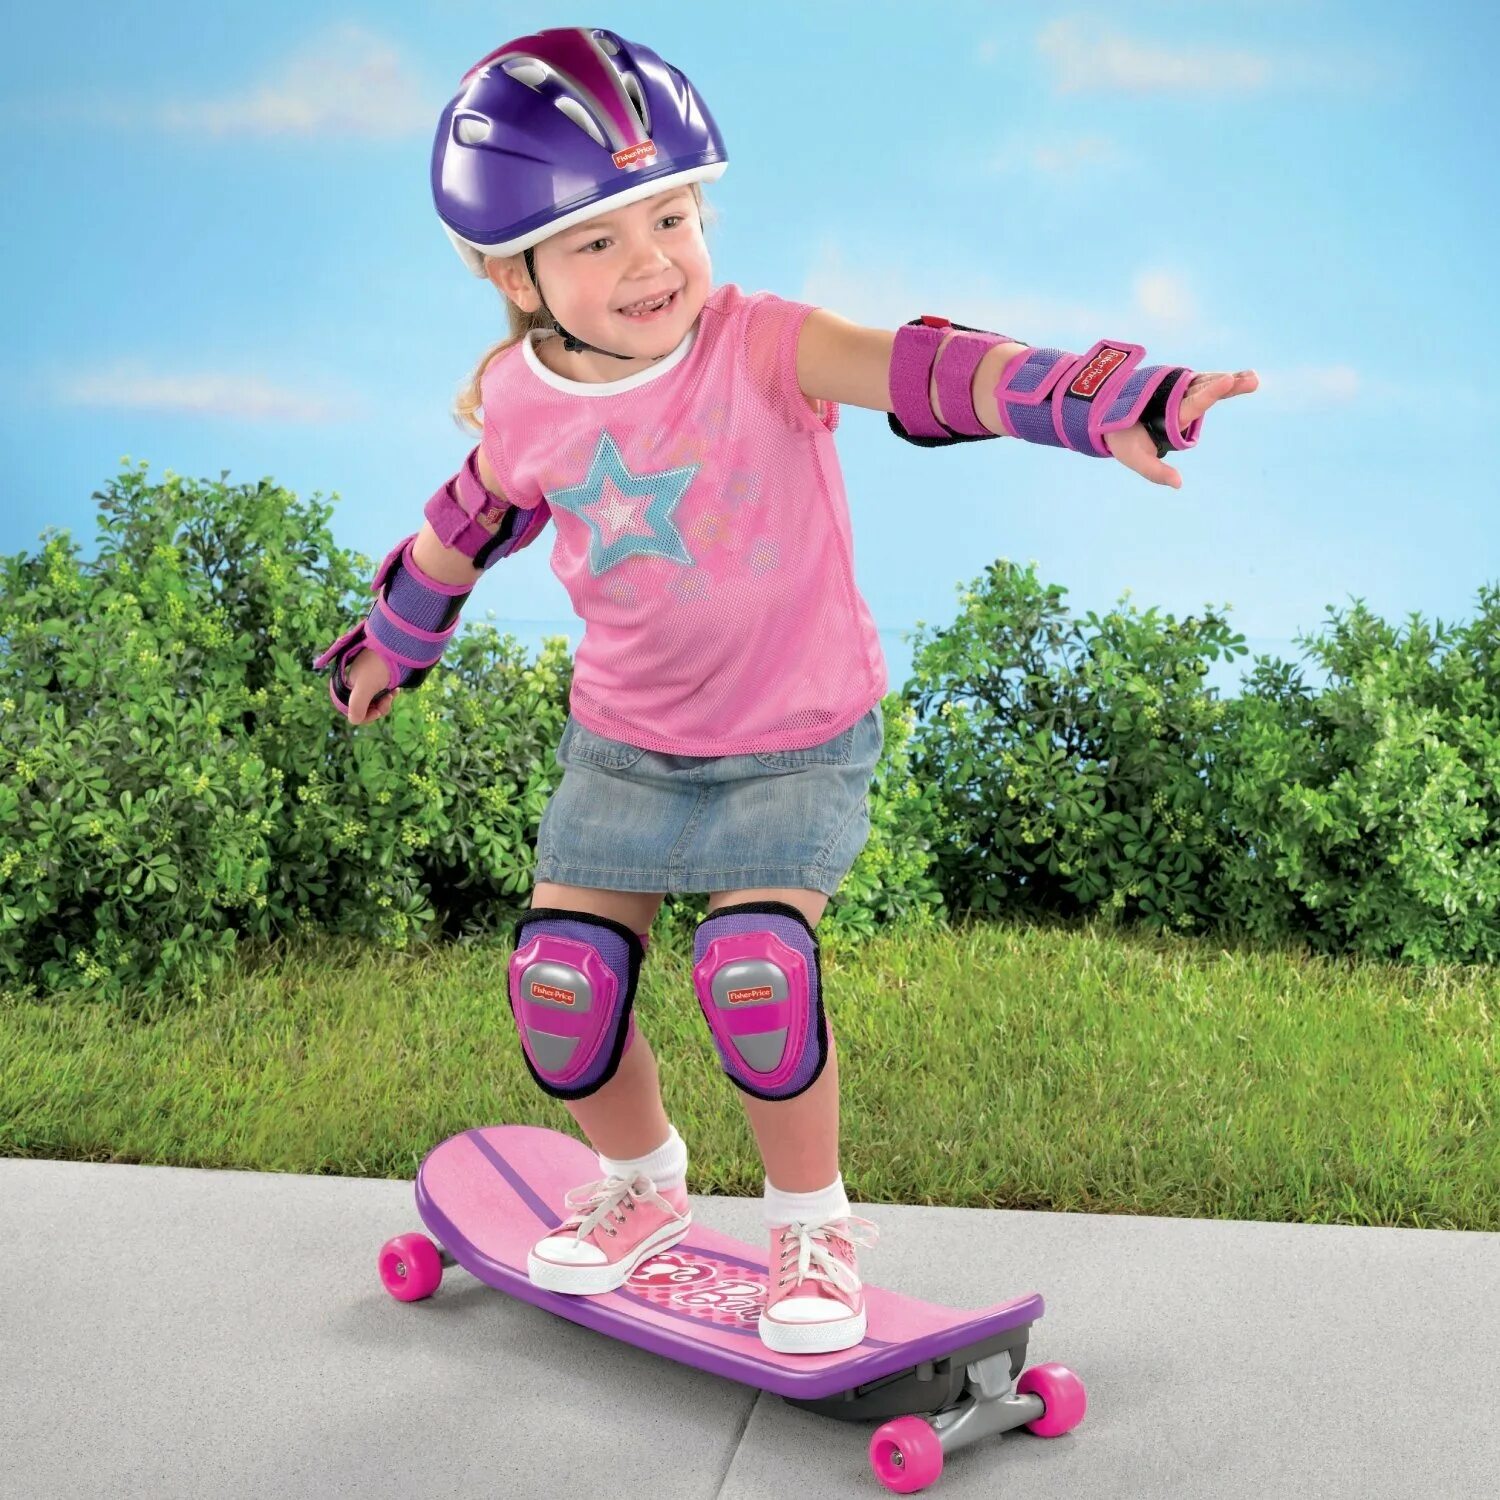 Скейт для малышей. Ролики детские ролики. Ребенок на скейте. Дети катаются на скейтборде.